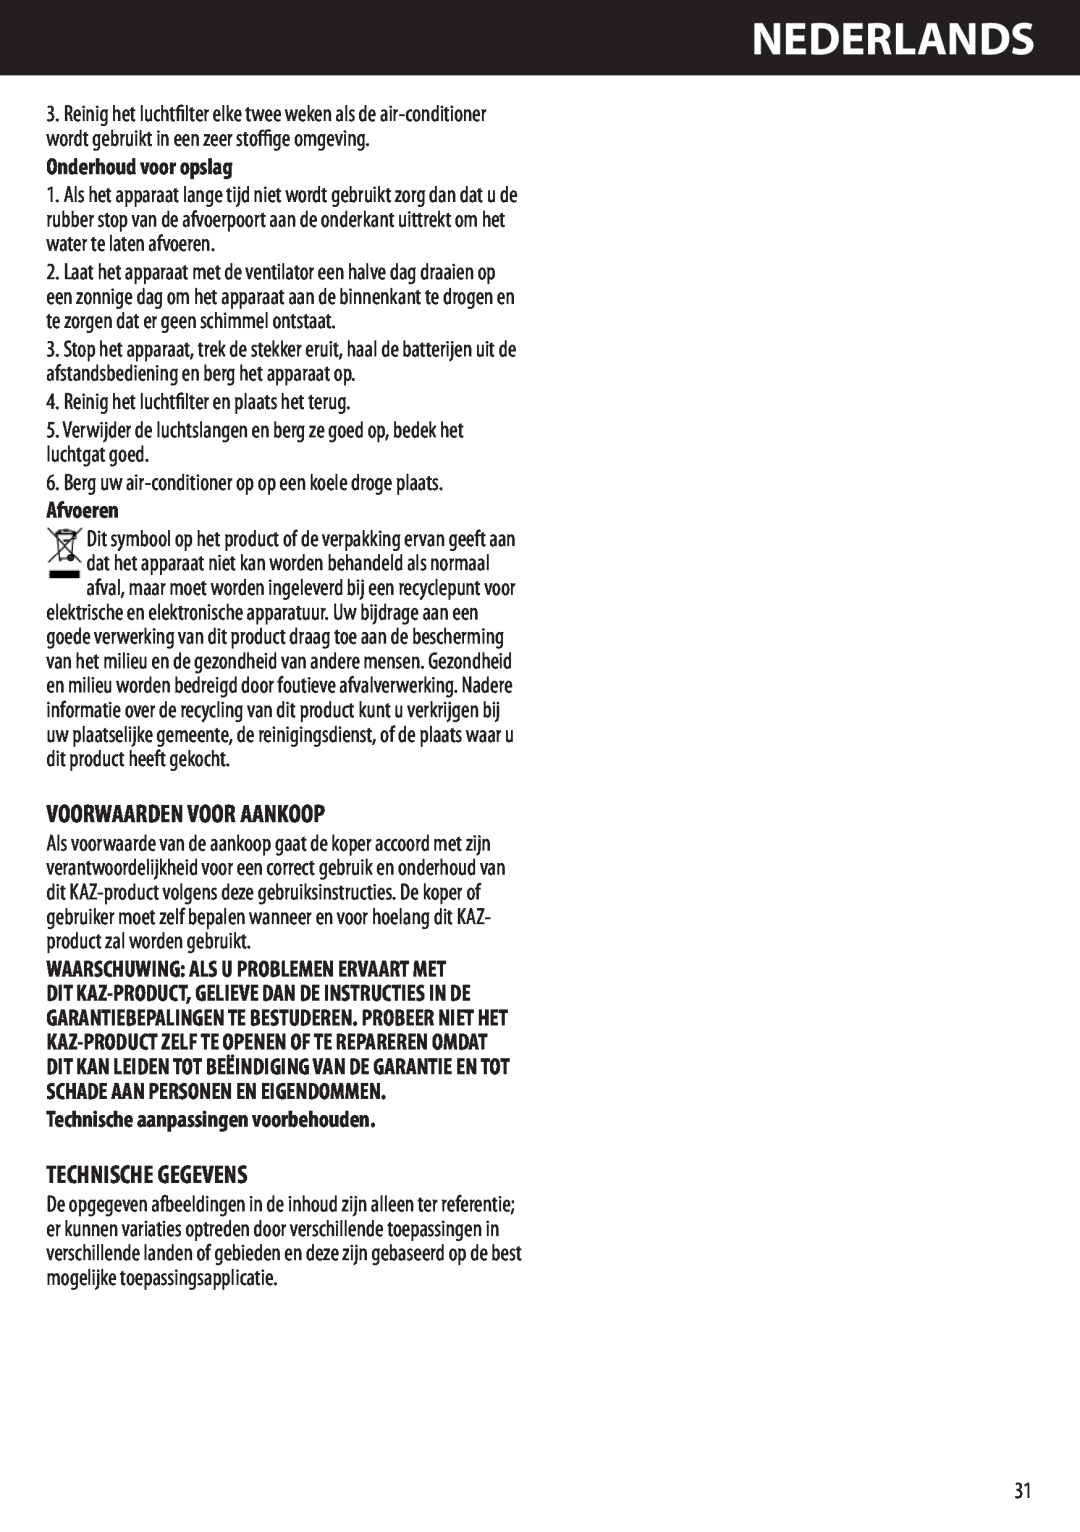 Honeywell AMH-10000E manual Voorwaarden Voor Aankoop, Technische Gegevens, Nederlands, Onderhoud voor opslag, Afvoeren 